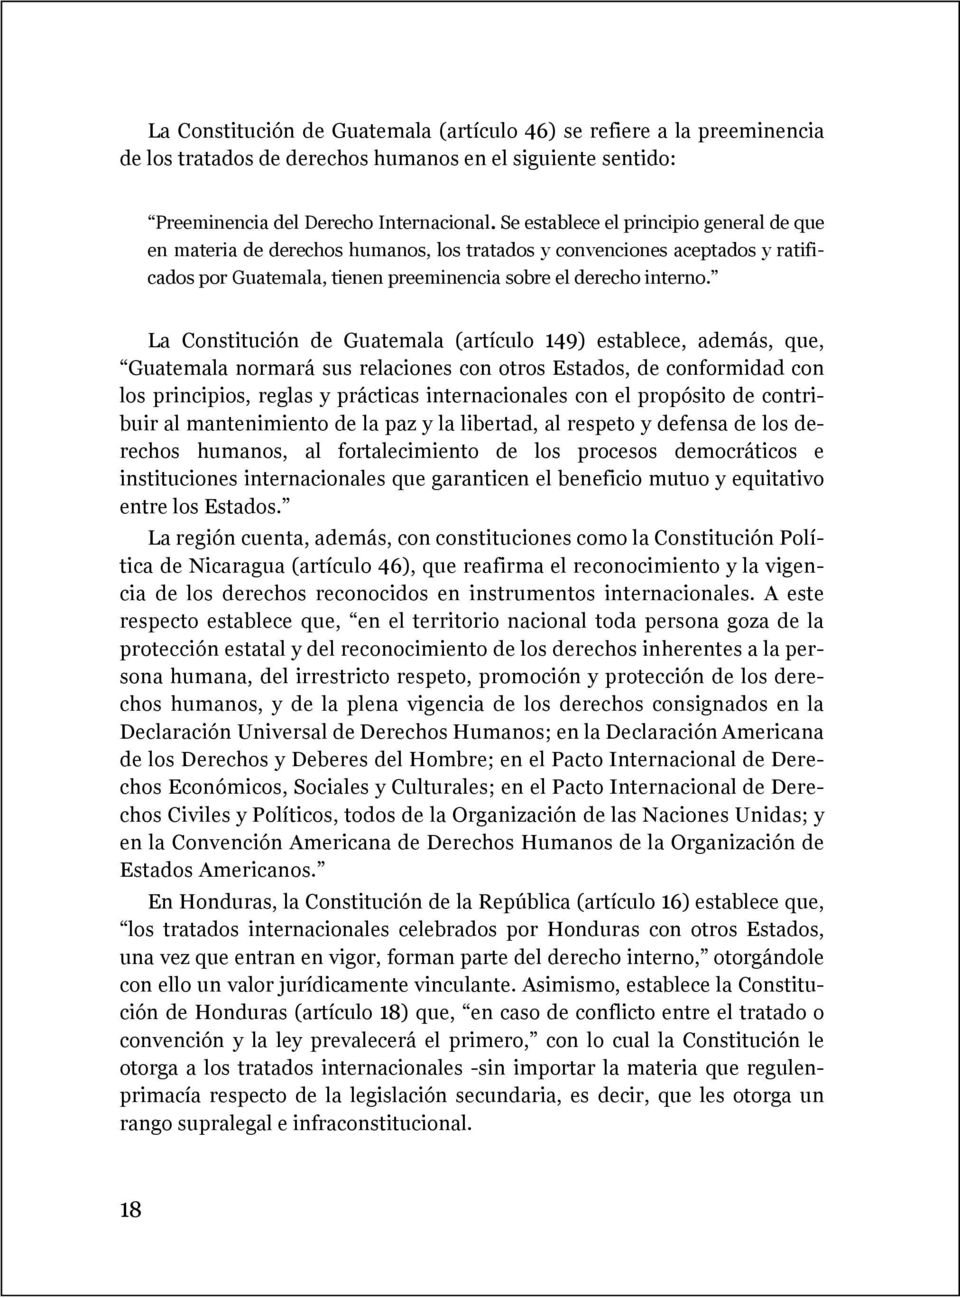 La Constitución de Guatemala (artículo 149) establece, además, que, Guatemala normará sus relaciones con otros Estados, de conformidad con los principios, reglas y prácticas internacionales con el